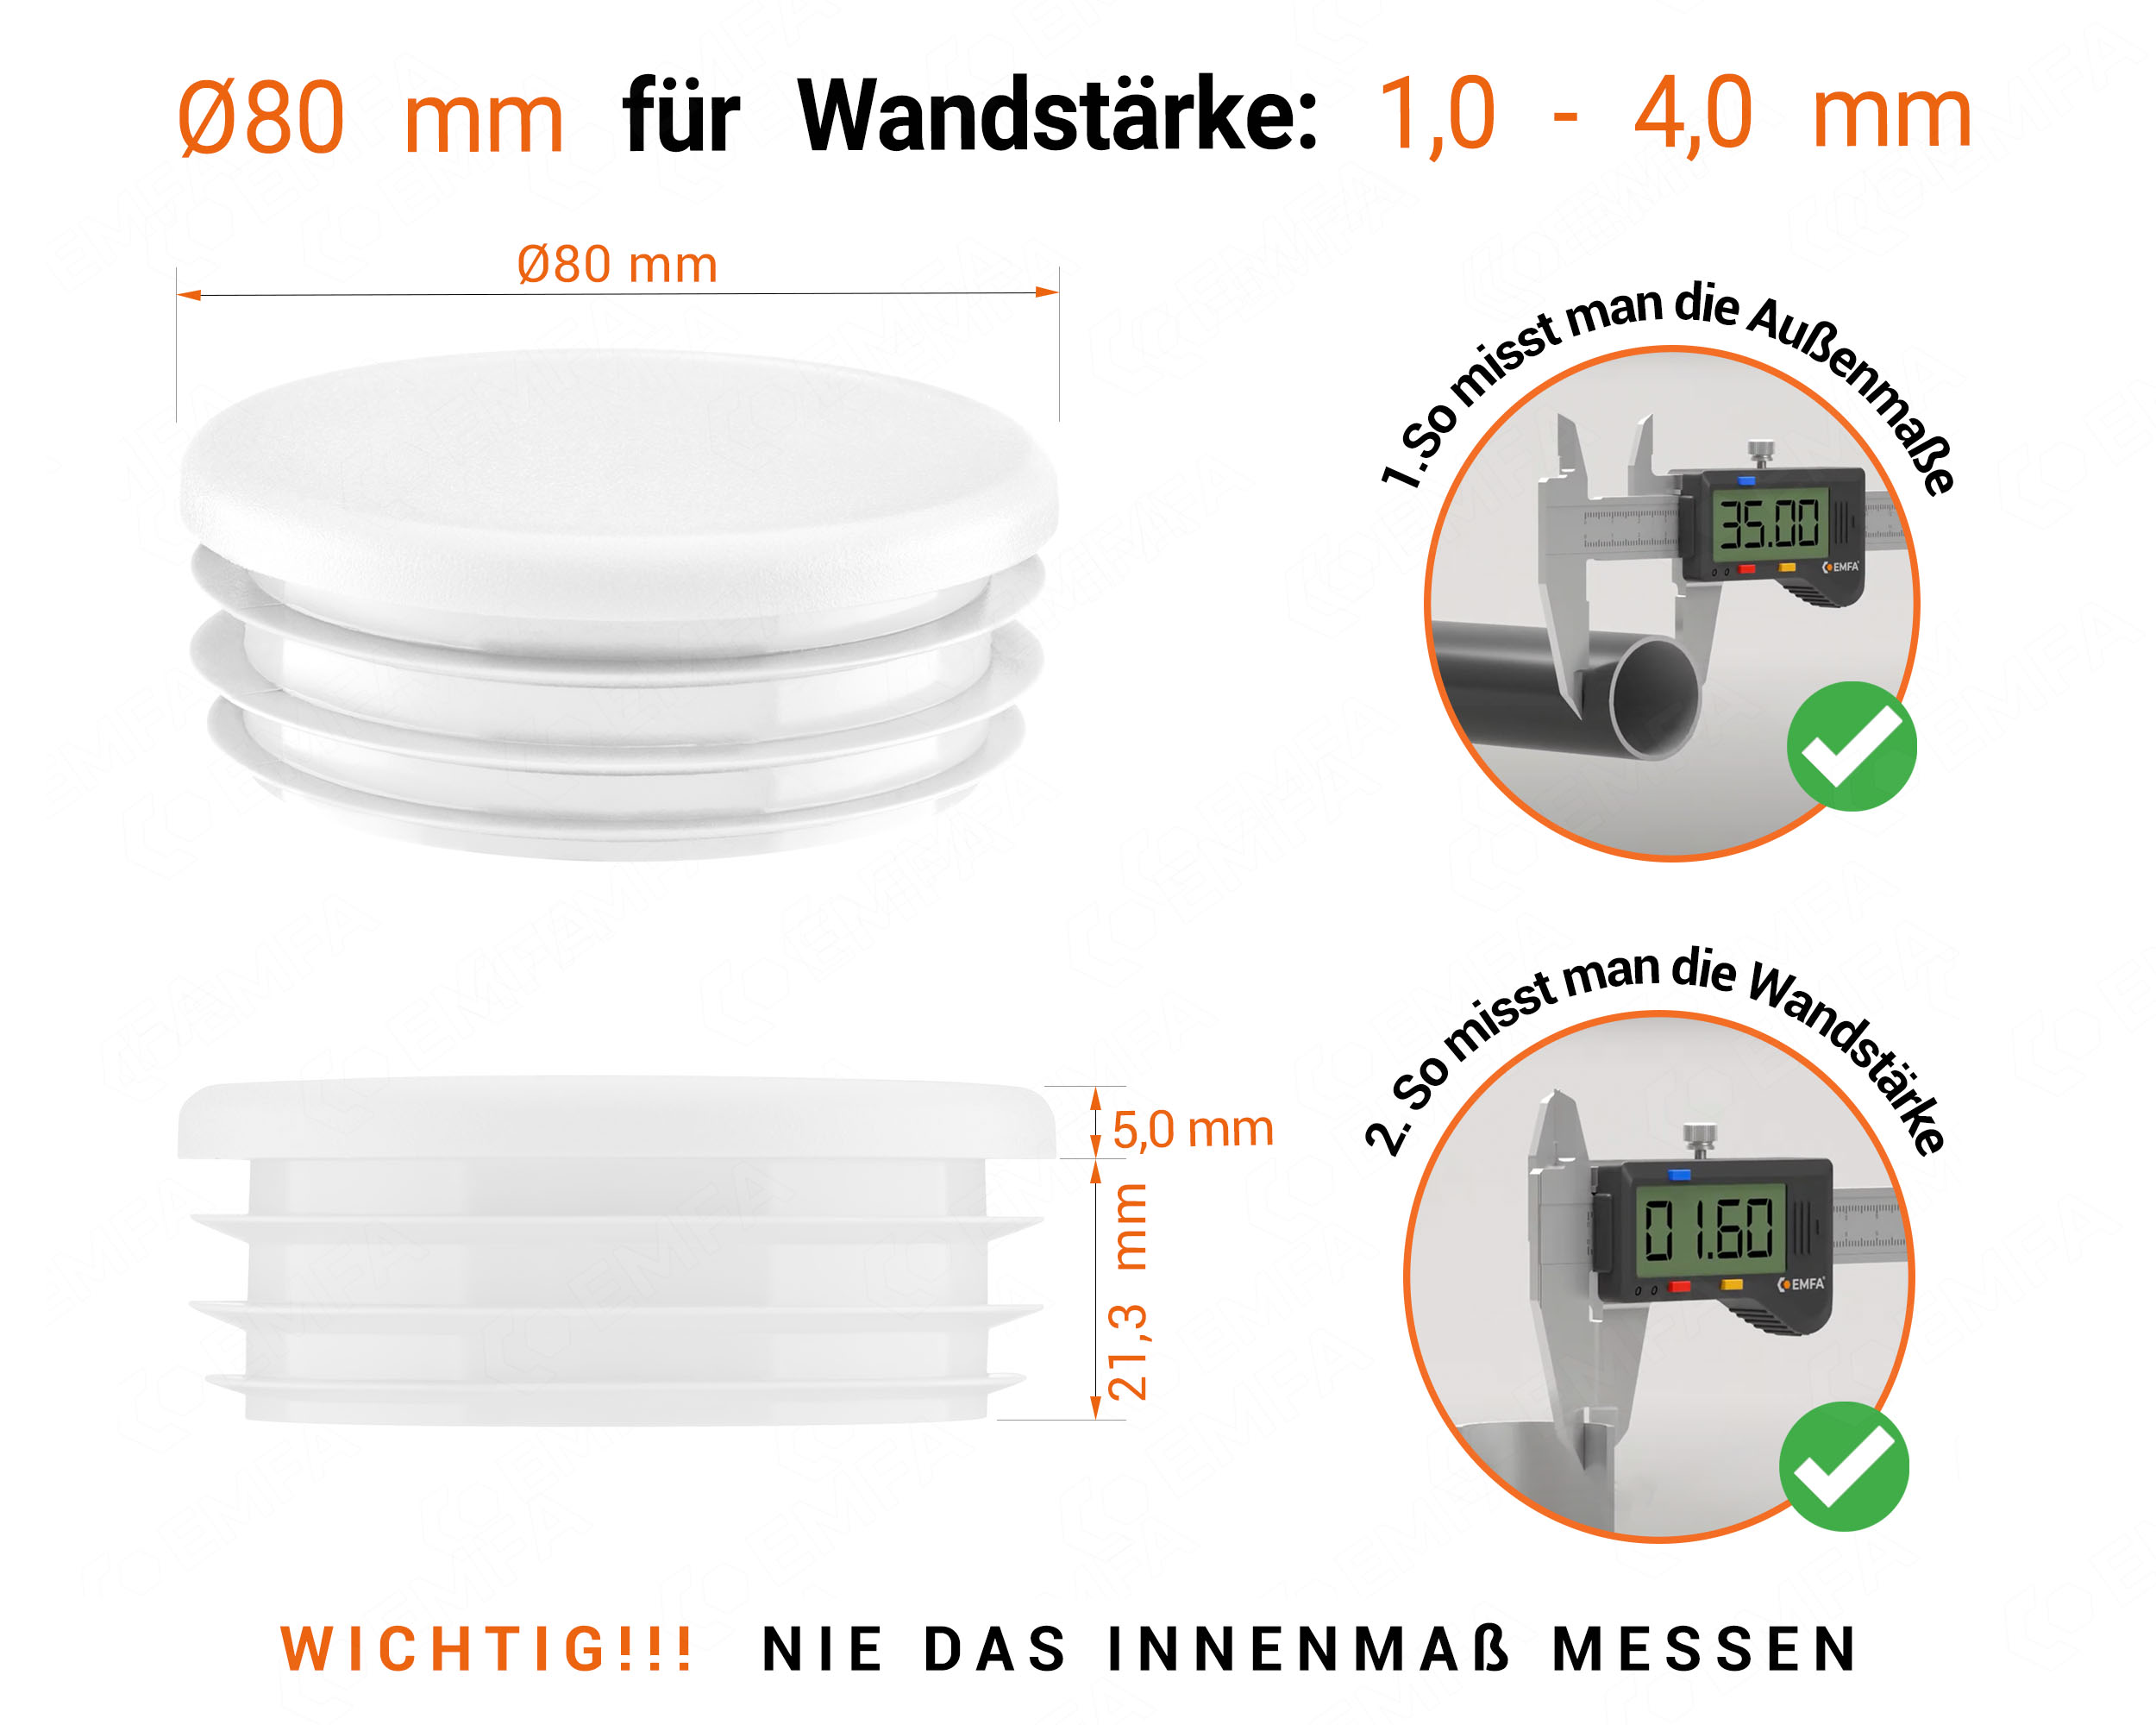 Weiße Endkappe für Rundrohre in der Größe 80 mm mit technischen Abmessungen und Anleitung für korrekte Messung